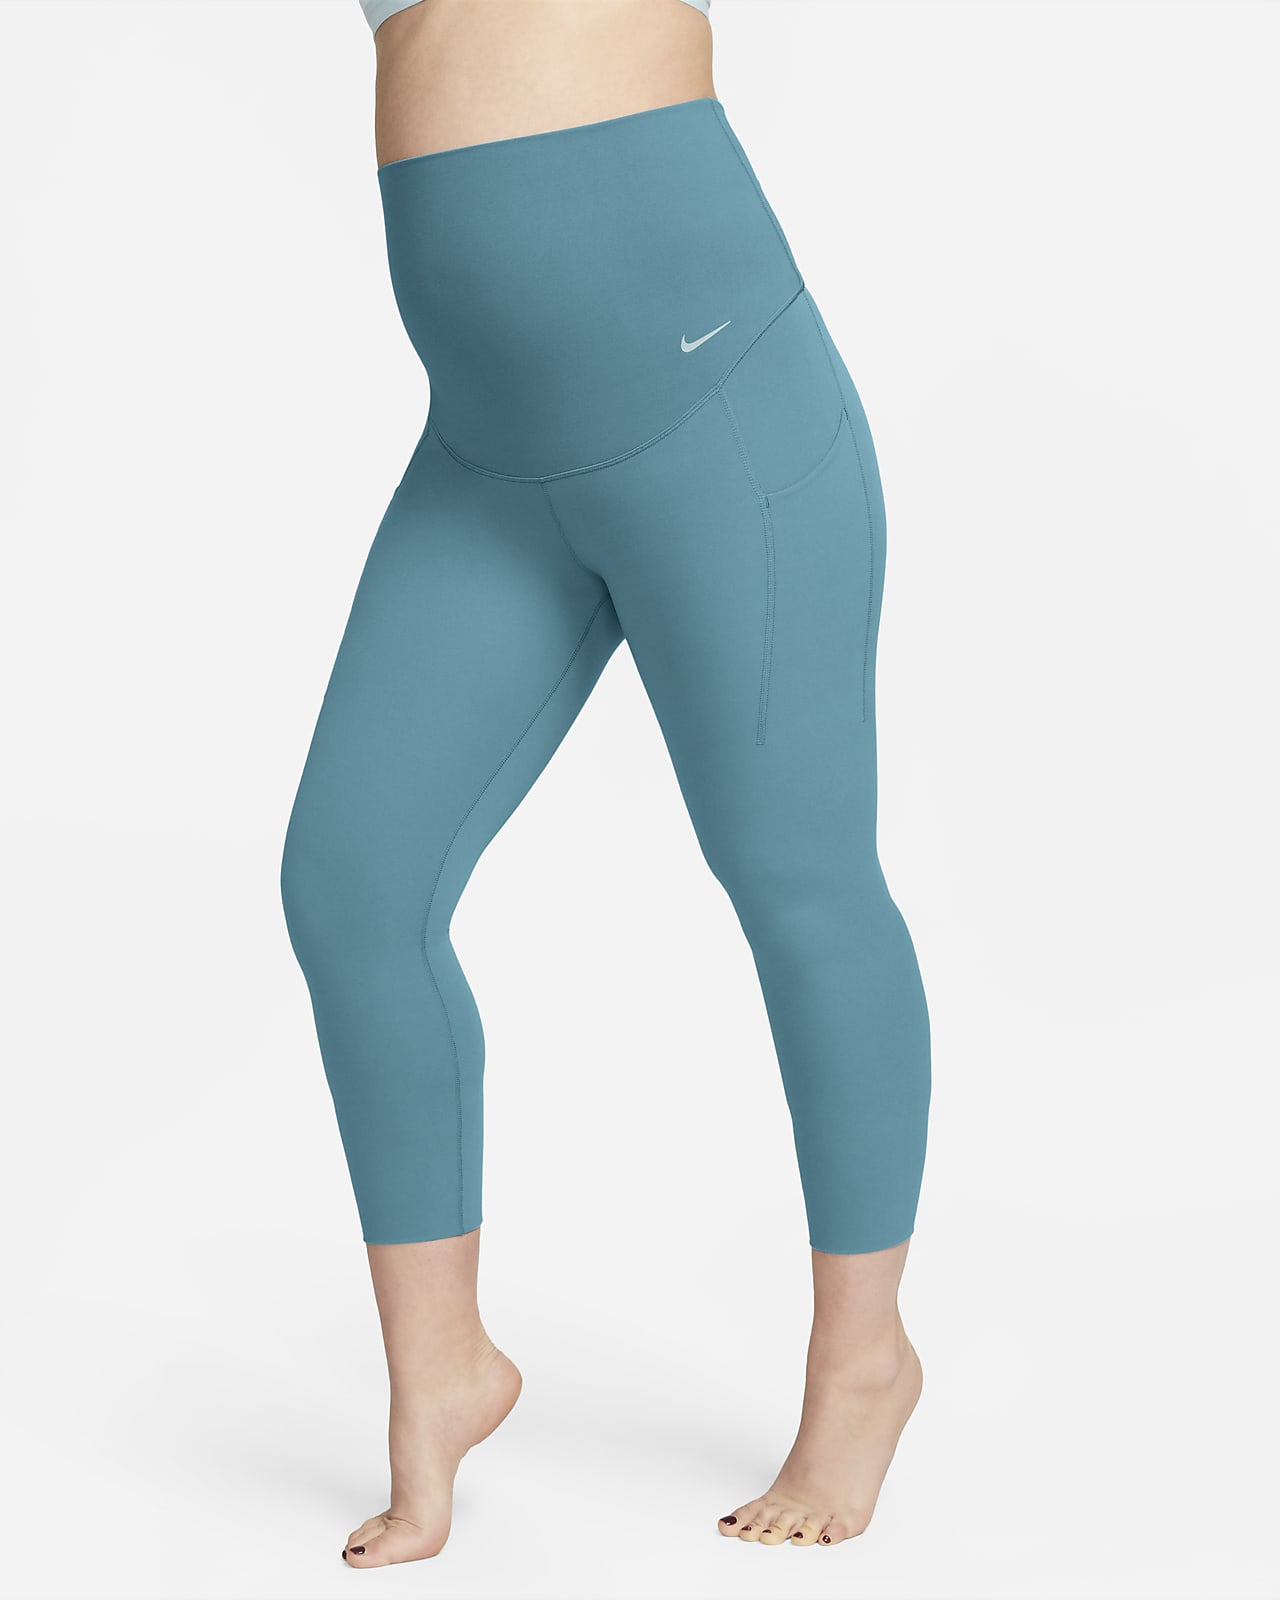 Nike Zenvy Women's Gentle-Support High-Waisted Full-Length Leggings. UK